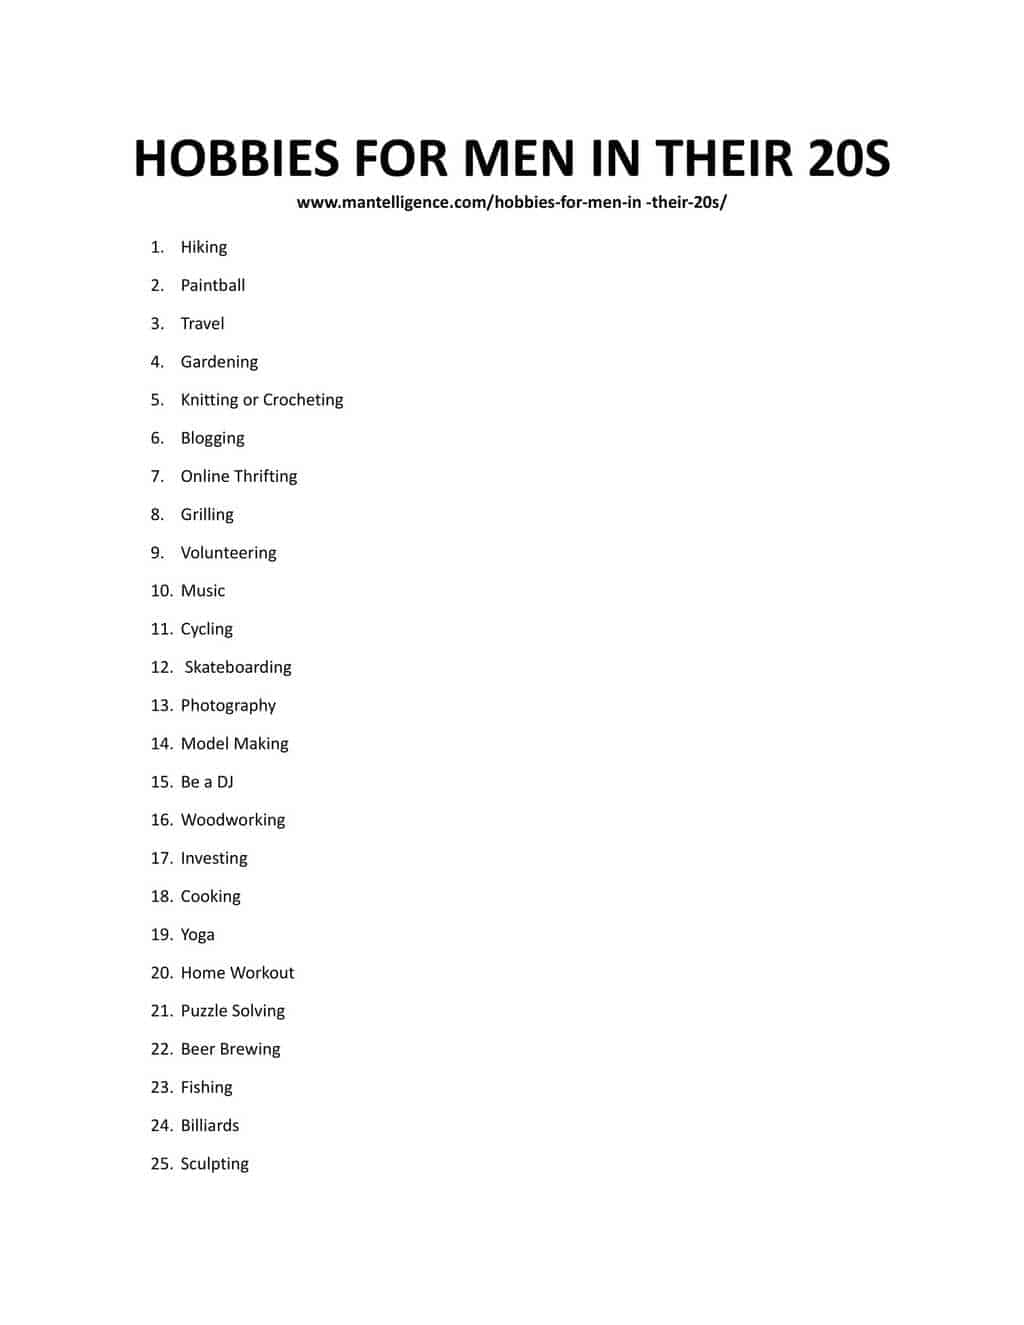 5 Cool Hobbies For Men 40+ - RTF